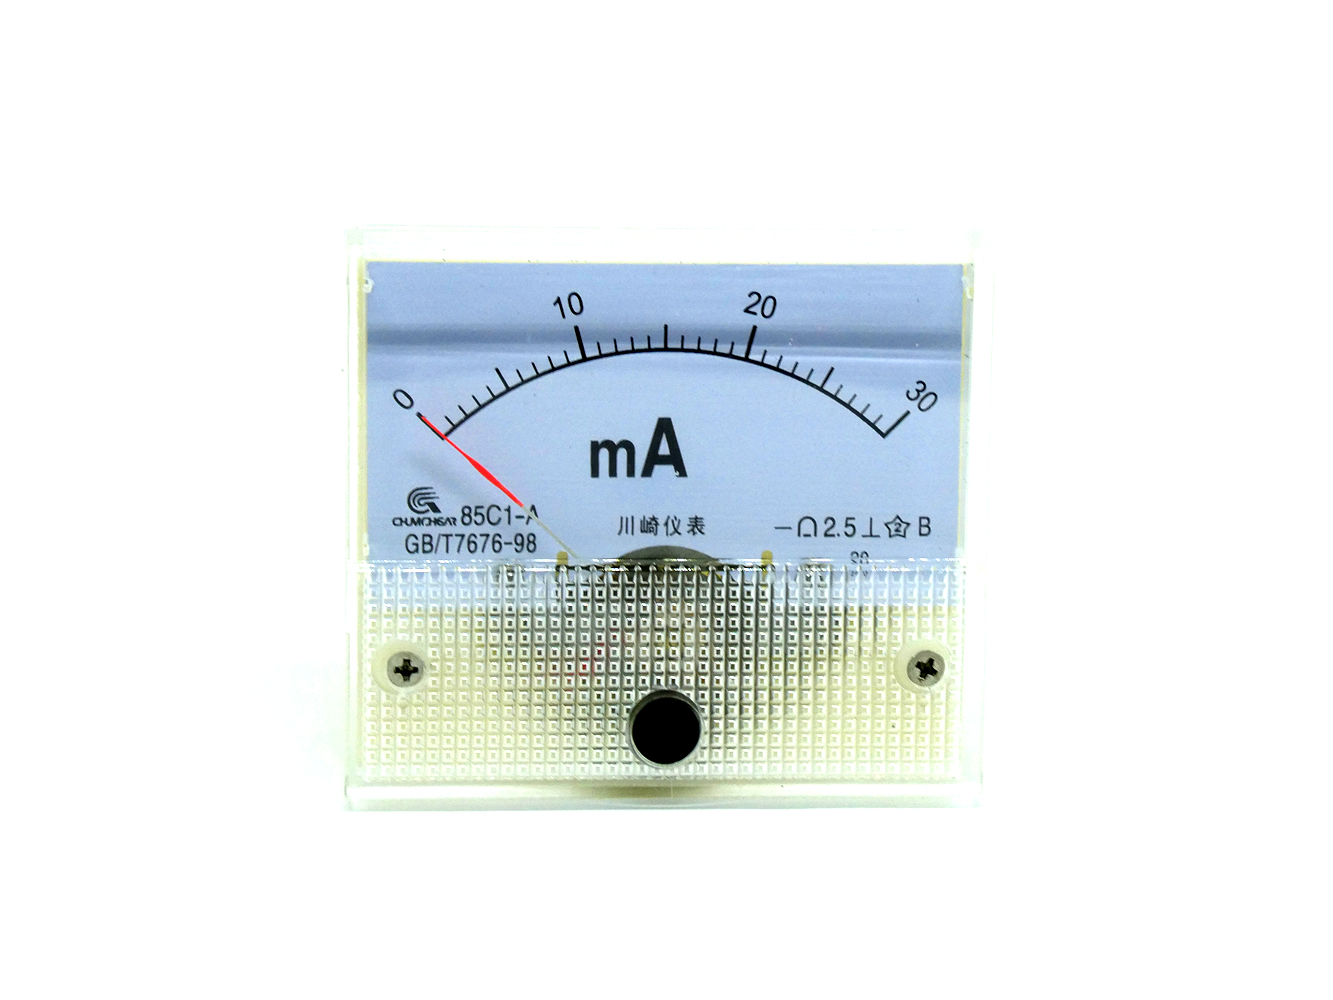 85C1-V DC 0-10V Rectangle Analog Panel Volt Meter Voltmeter Gauge